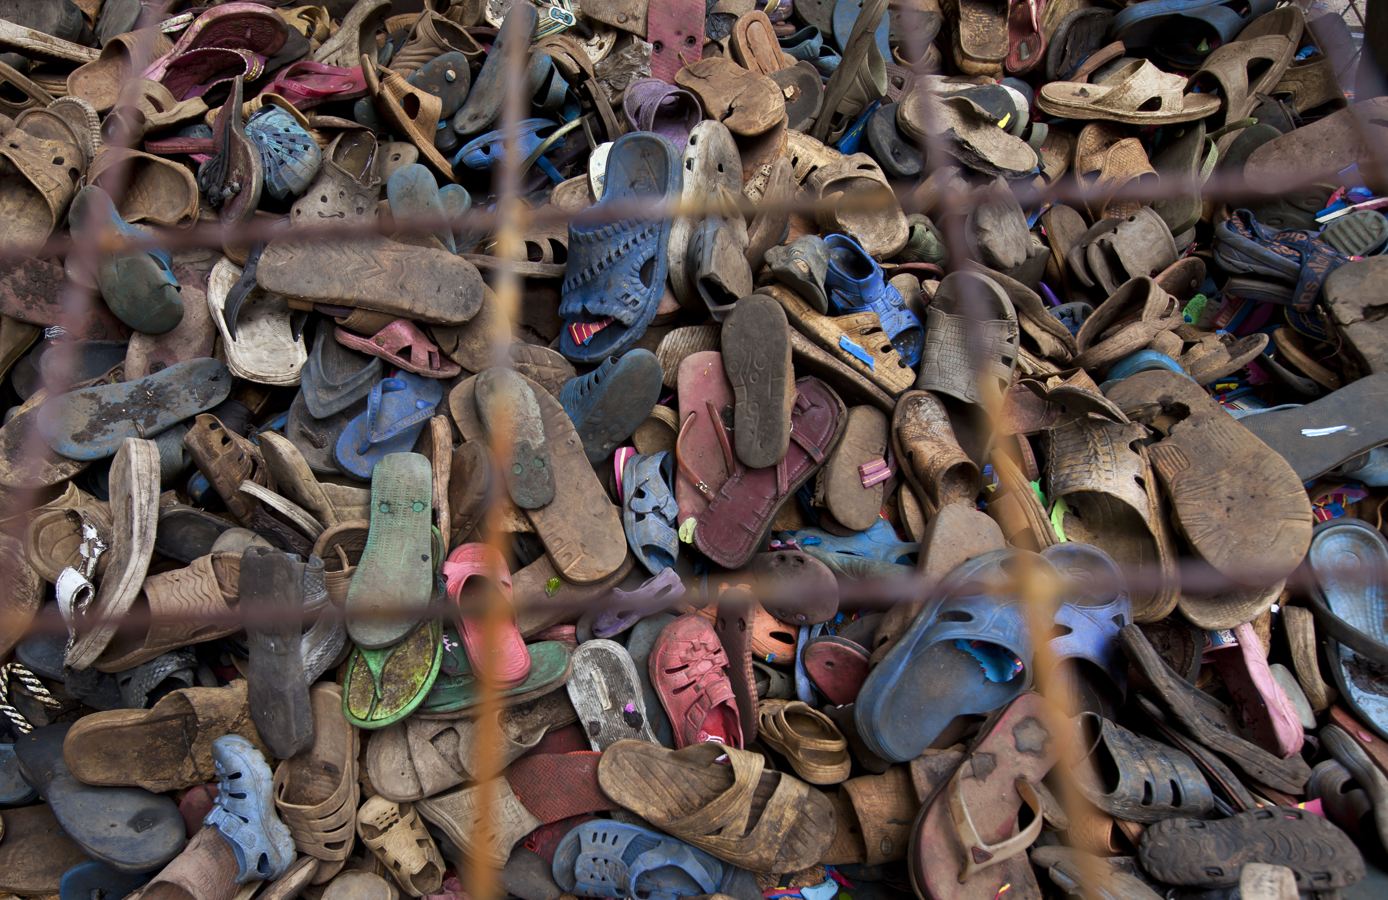 你能想象这些精美绝伦的手工艺品都是用废旧拖鞋做成的吗?